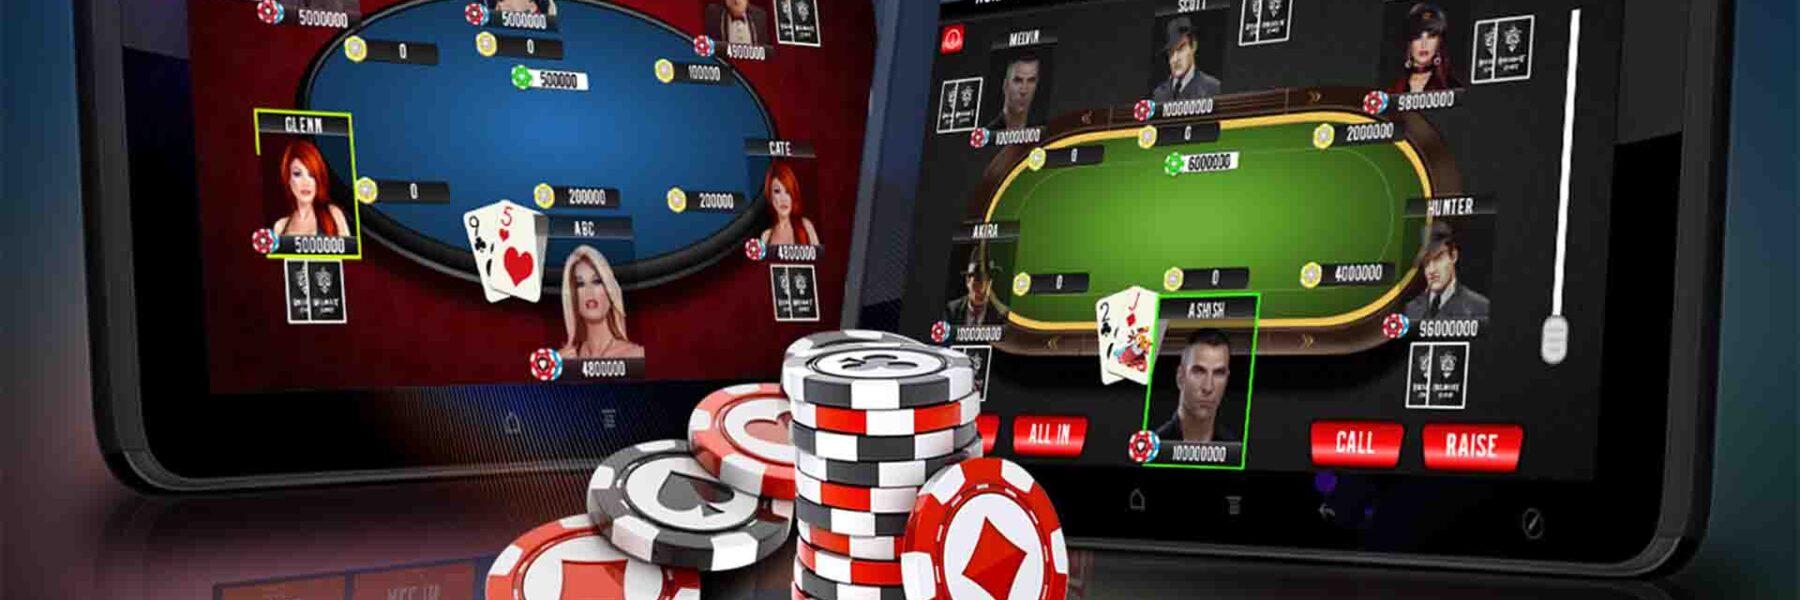 judi poker online tanpa deposit